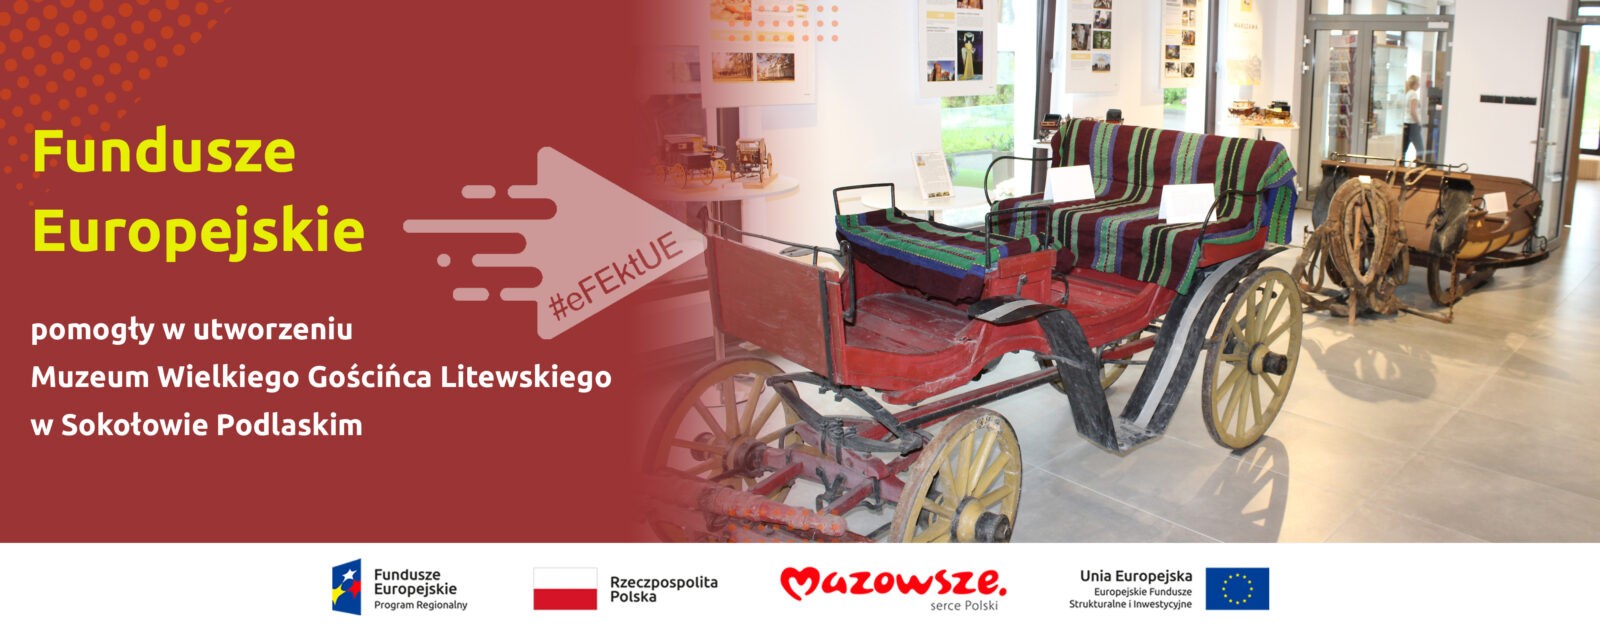 Na grafice znajduje się hasło: Fundusze Europejskie pomogły w utworzeniu Muzeum Wielkiego Gościńca Litewskiego w Sokołowie Podlaskim. Na zdjęciu eksponaty muzealne.